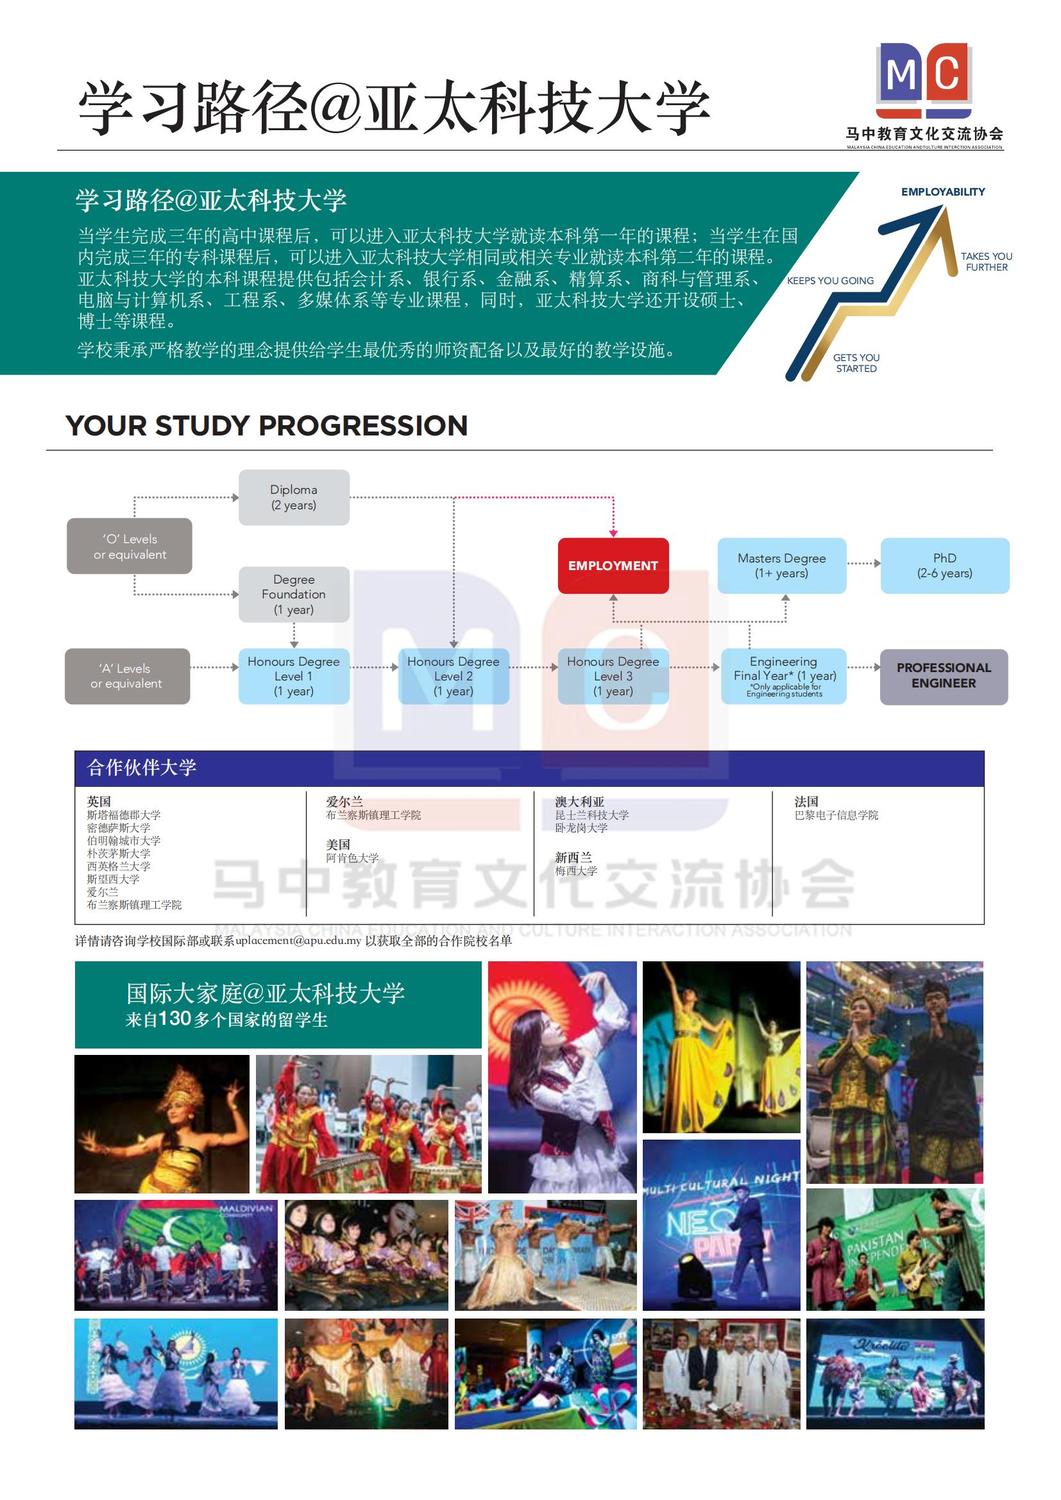 亚太科技大学宣传册_03.jpg